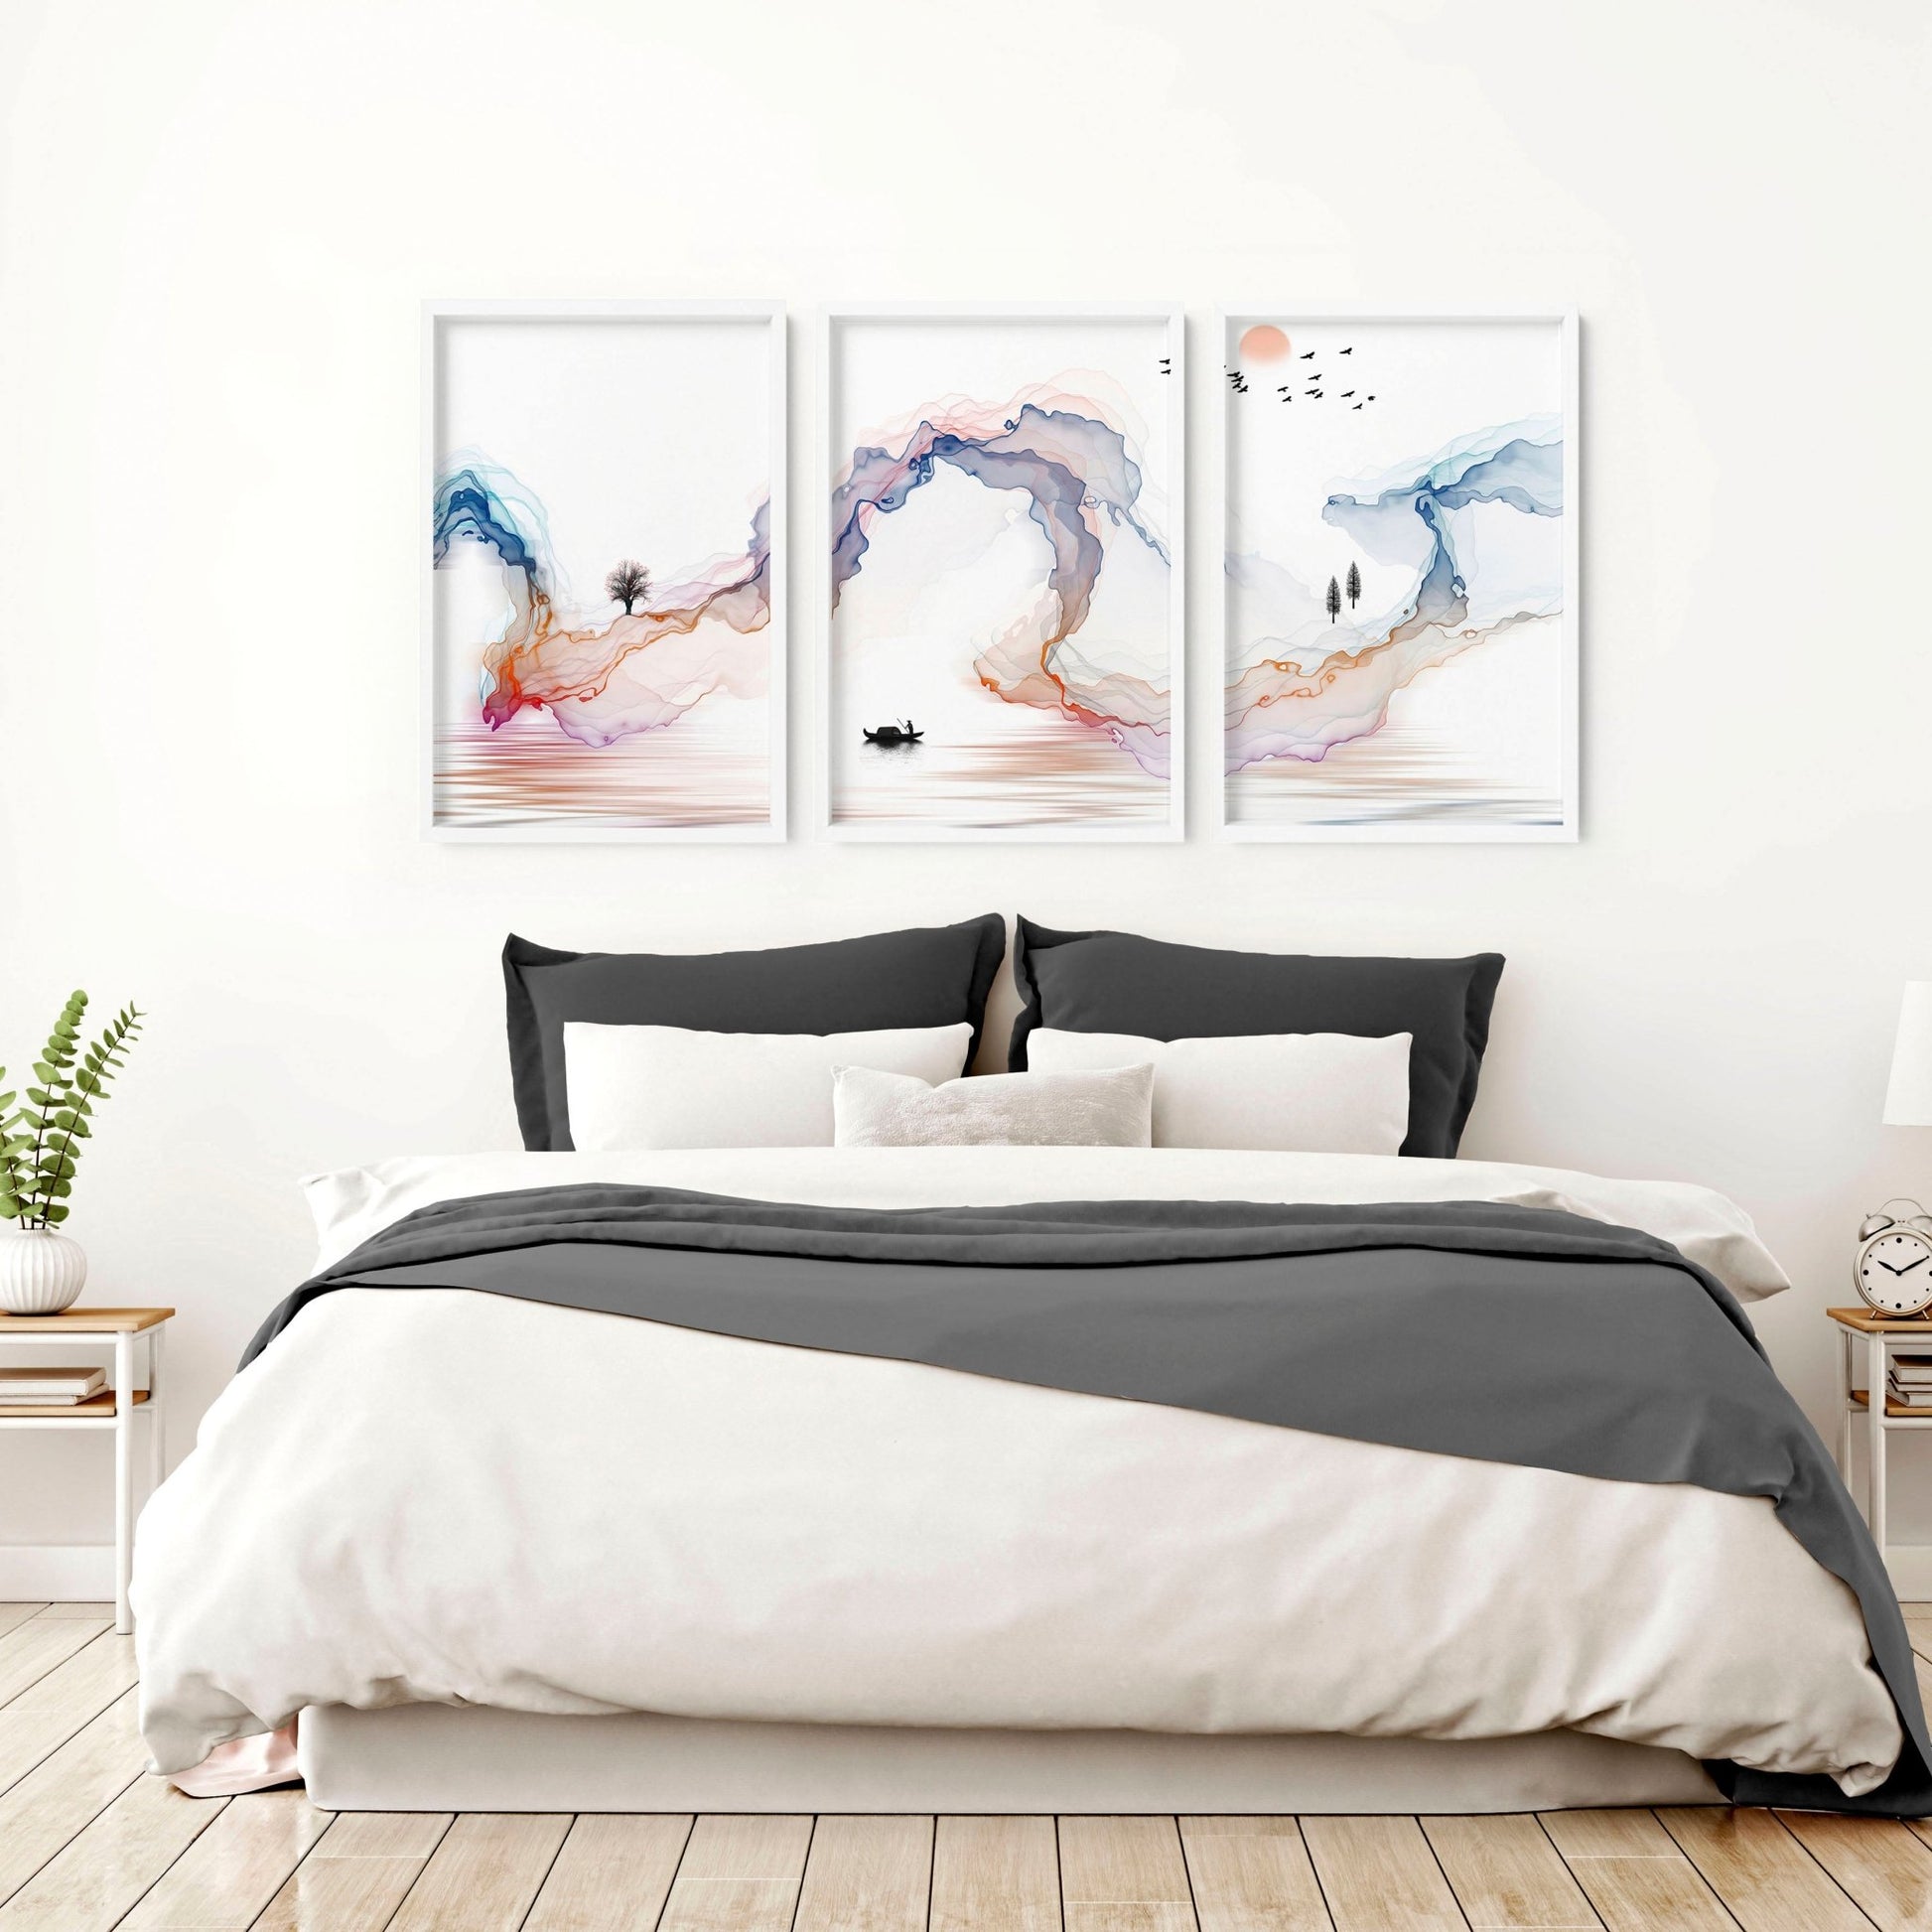 Japanese minimalist art | set of 3 wall art prints - About Wall Art